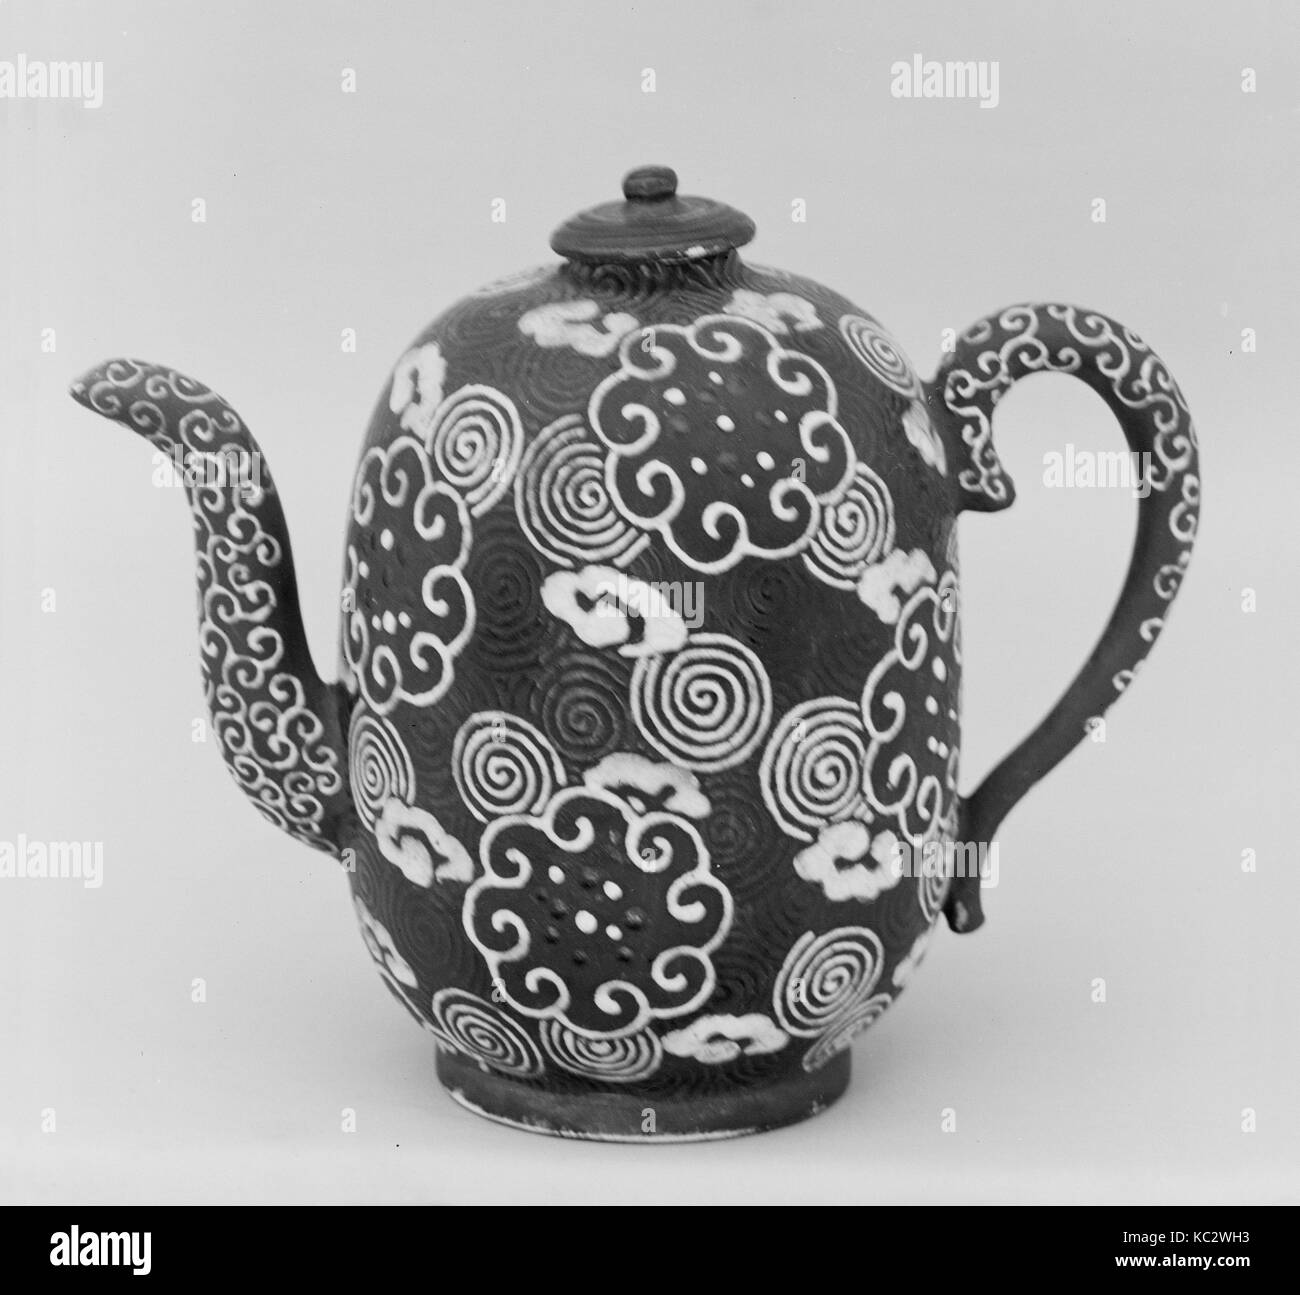 Waterpot, période Edo (1615-1868), ca. 1850, le Japon, la poterie recouverte de glaçage et dessins dans l'émail (Awata ware), H. 5 3/4 po Banque D'Images